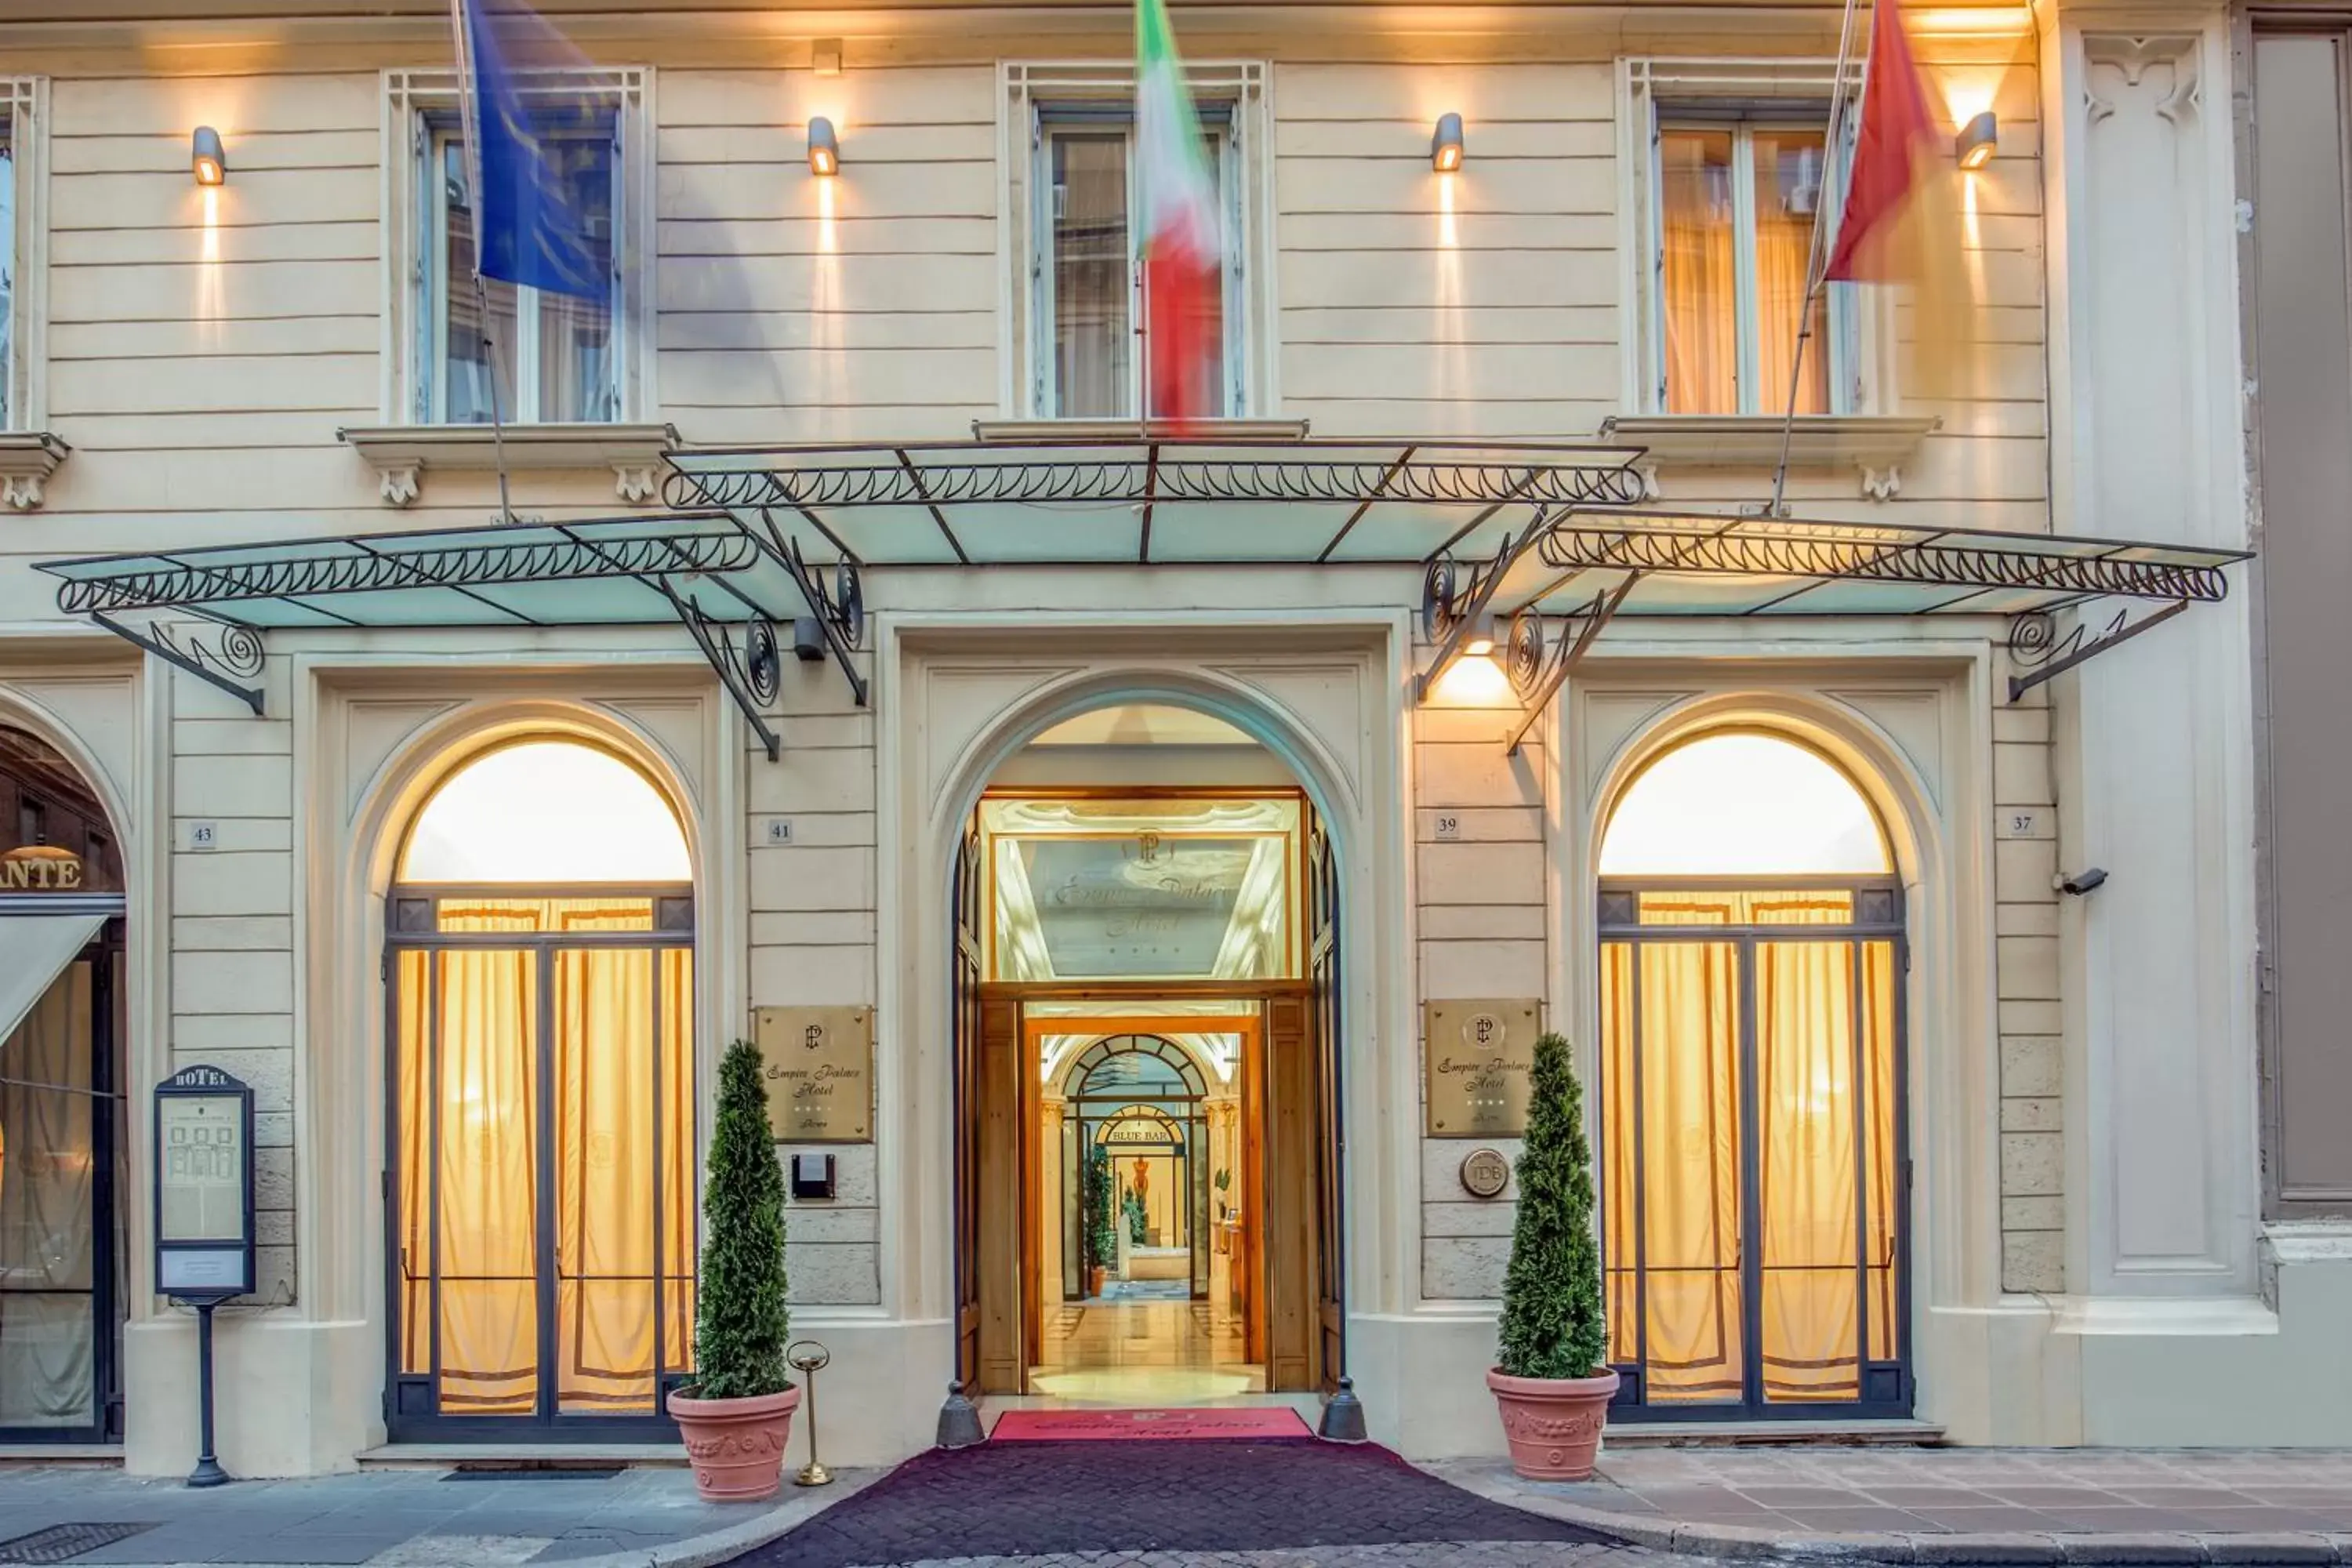 Property building, Facade/Entrance in UNAWAY Hotel Empire Roma